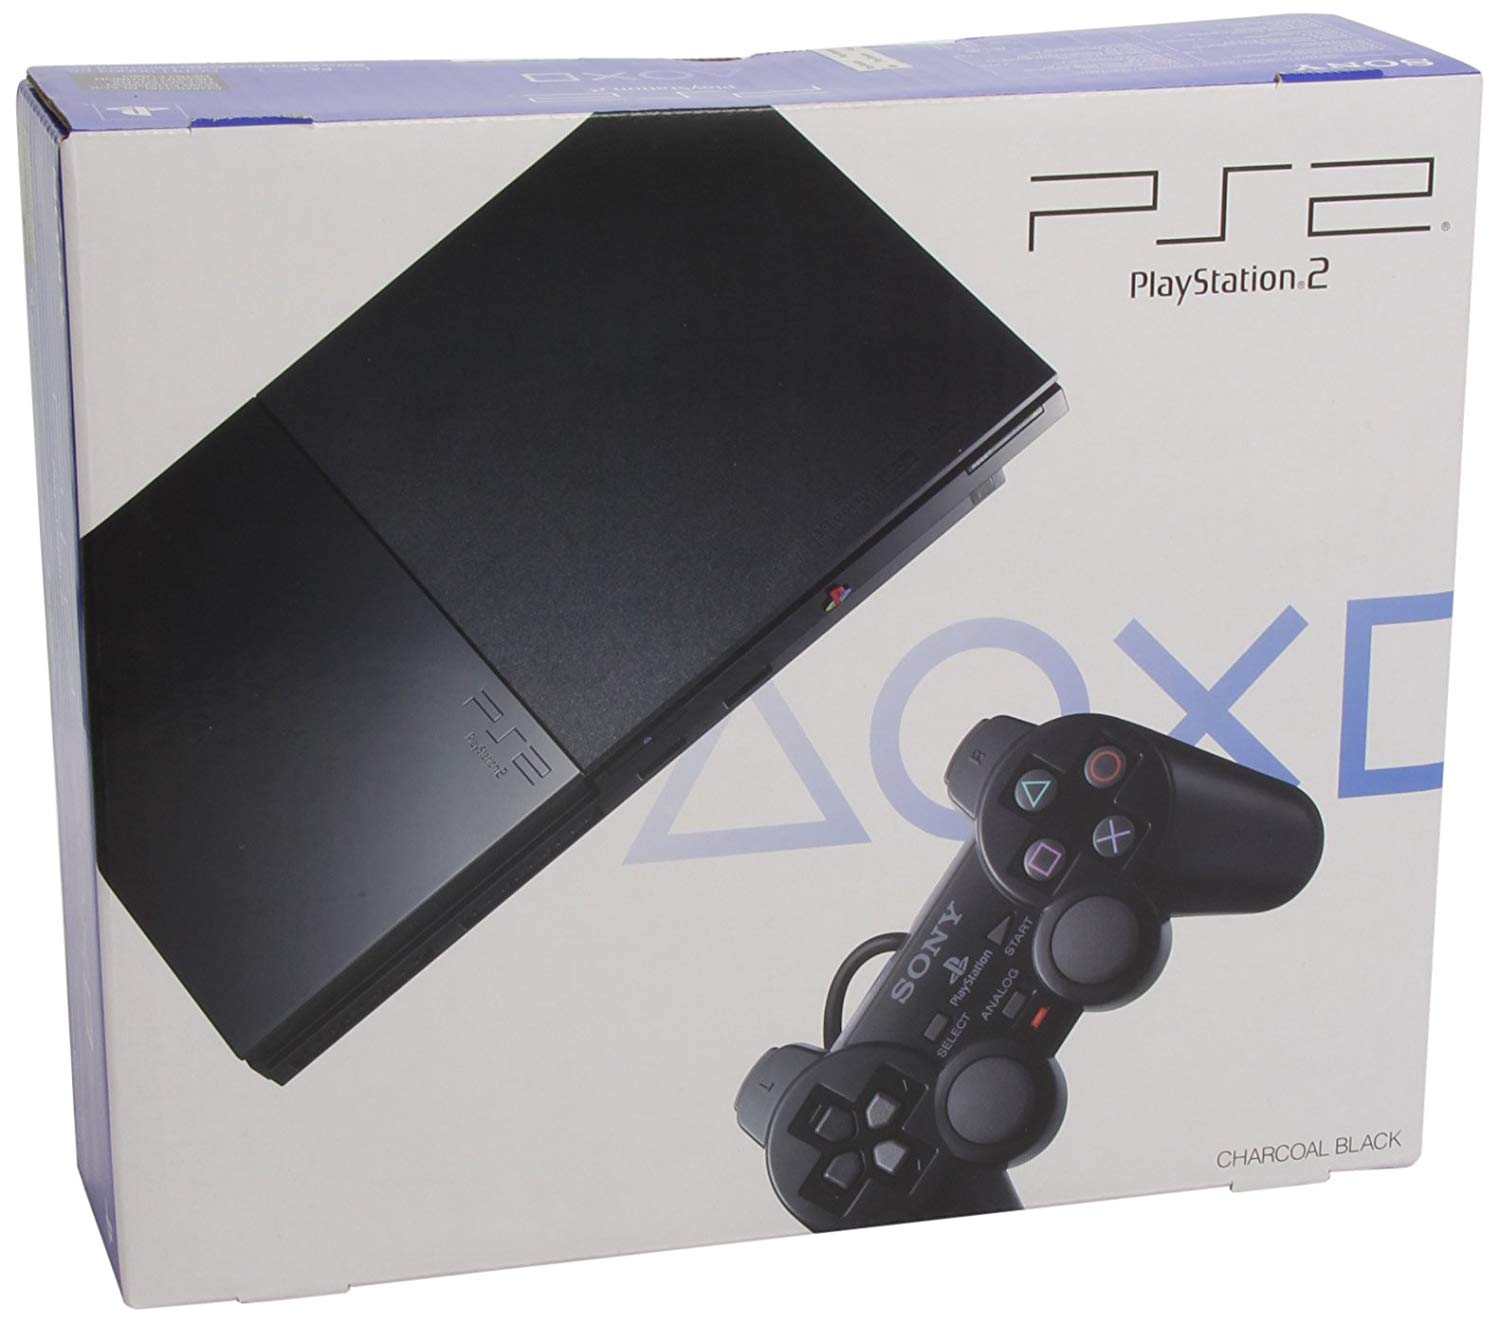 PlayStation 2 compie 20 anni: le curiosità della console più venduta di sempre